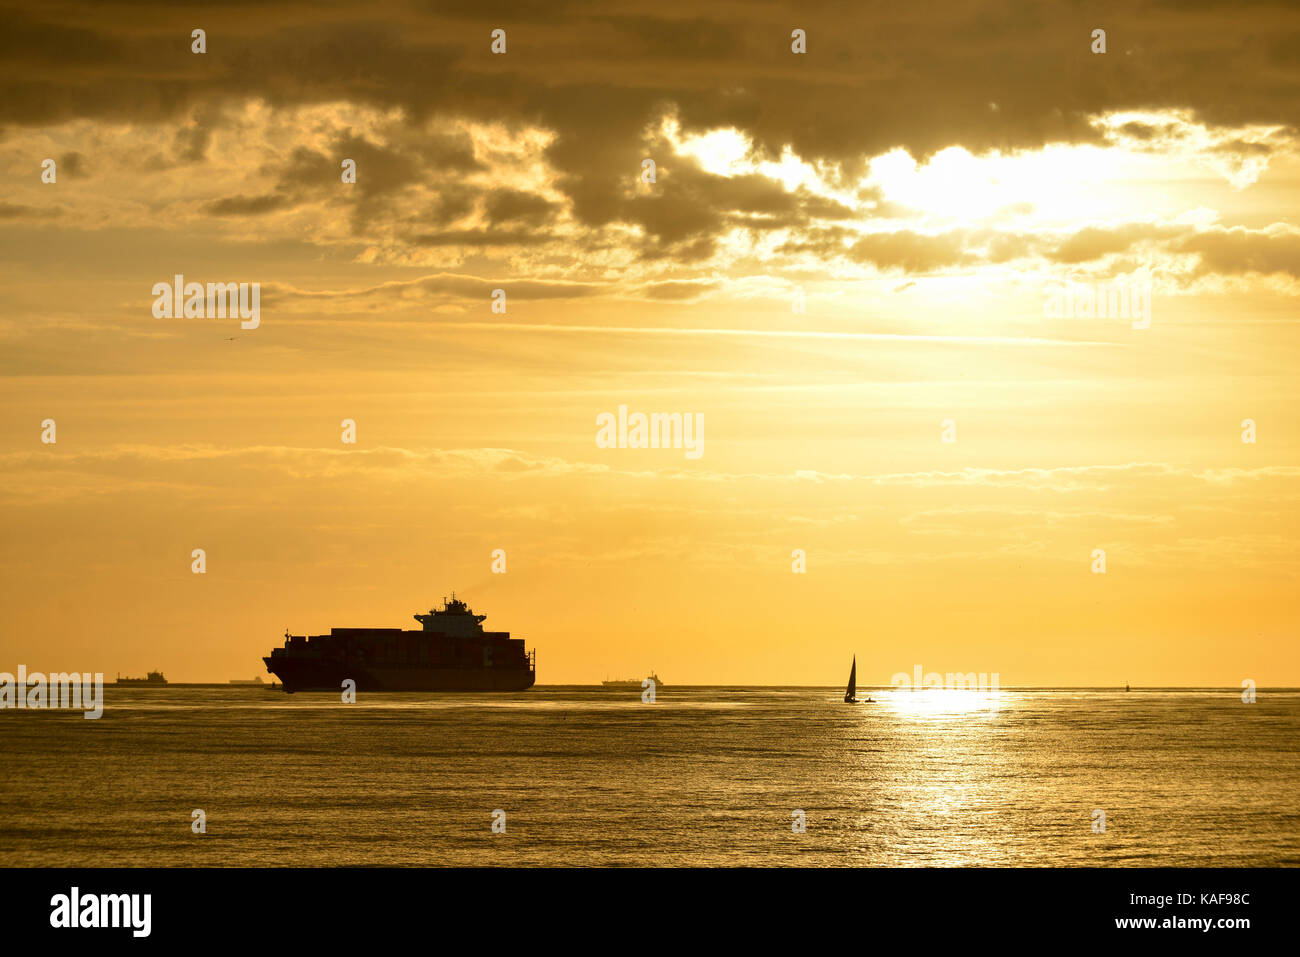 Le Havre (Normandie, région du nord-ouest de la France) : container ship et voilier au large de la côte au coucher du soleil Banque D'Images